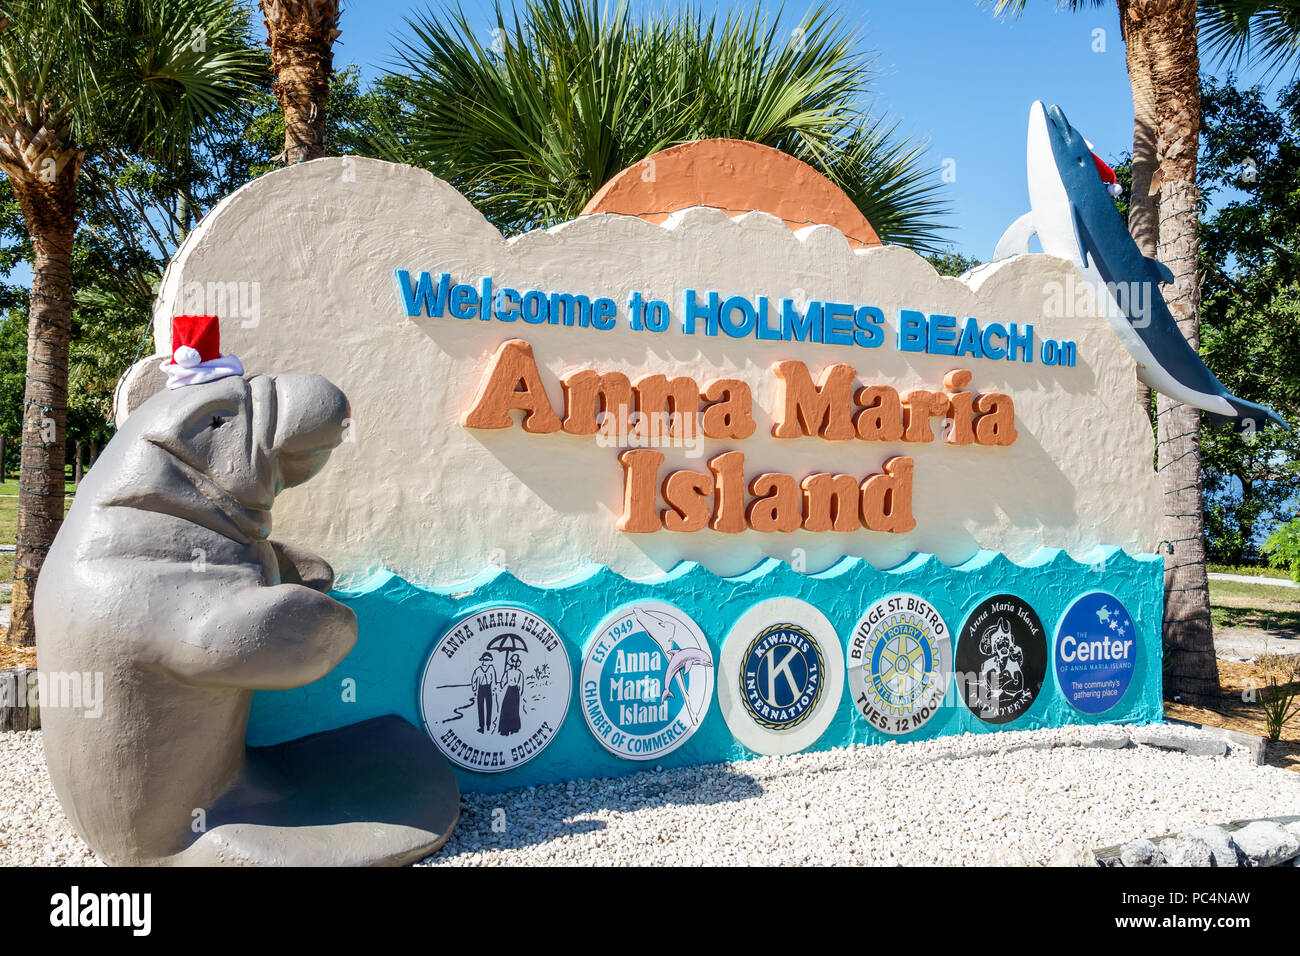 Florida,isola di Anna Maria,Spiaggia di Holmes,cartello di benvenuto,camera di commercio,Kiwanis,Rotary Club,decorazione di vacanza,cappello di Santa,scultura di lamantini,FL171212053 Foto Stock